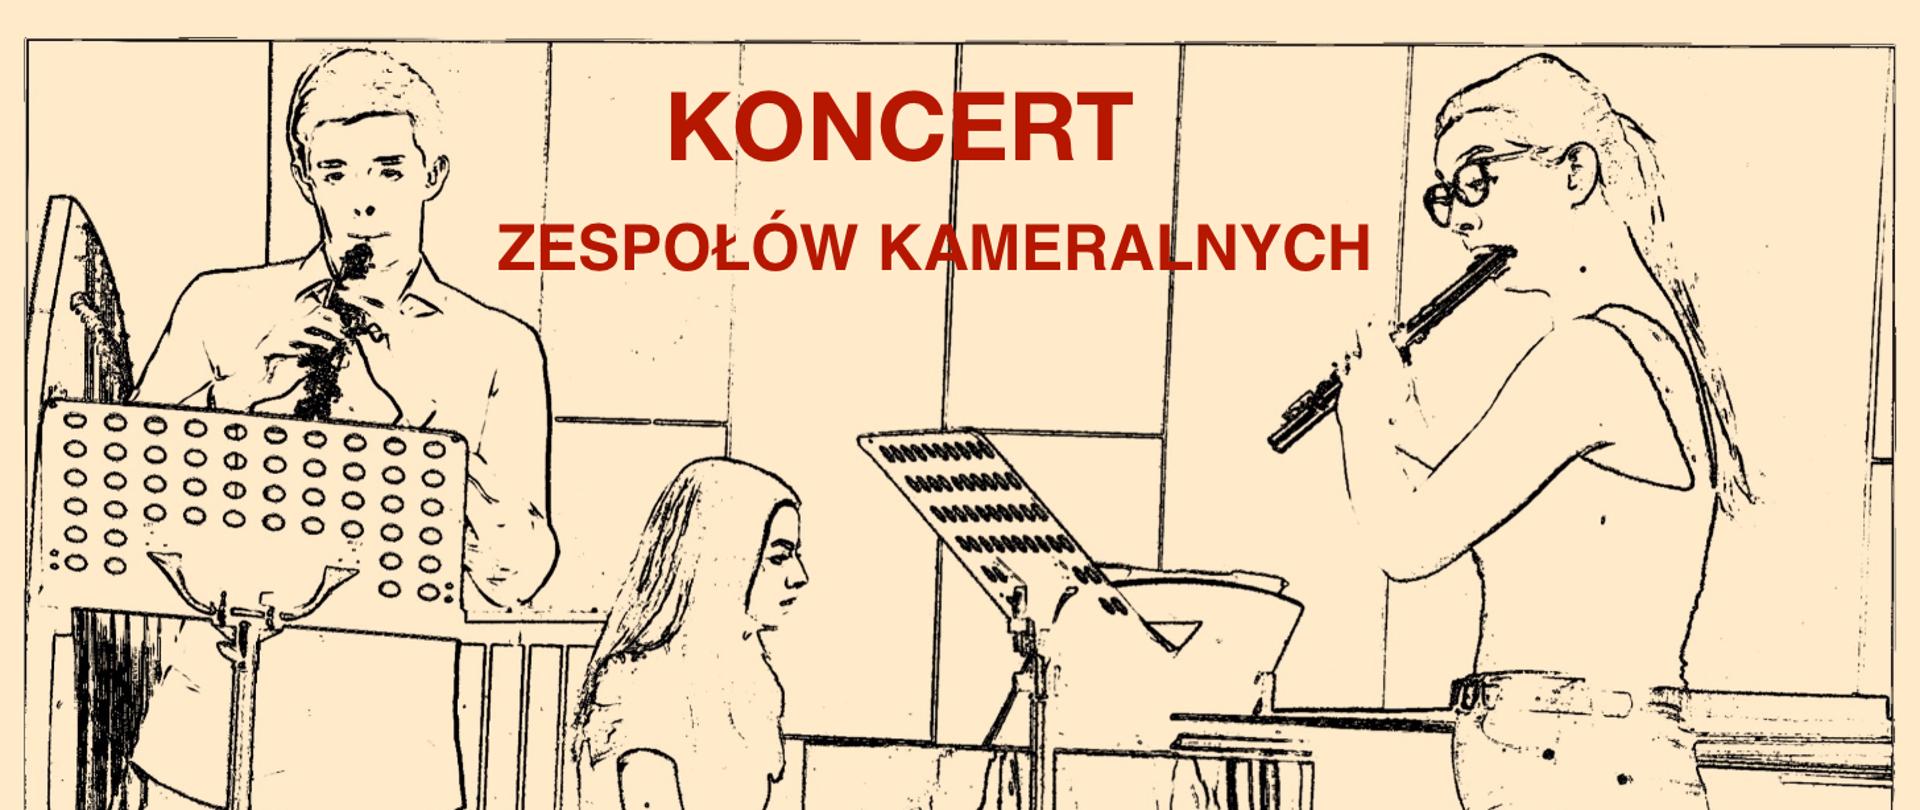 Grafika przedstawia szkic zespołu trio, obój, fortepian i flet. U góry czerwony napis: koncert zespołów kameralnych.